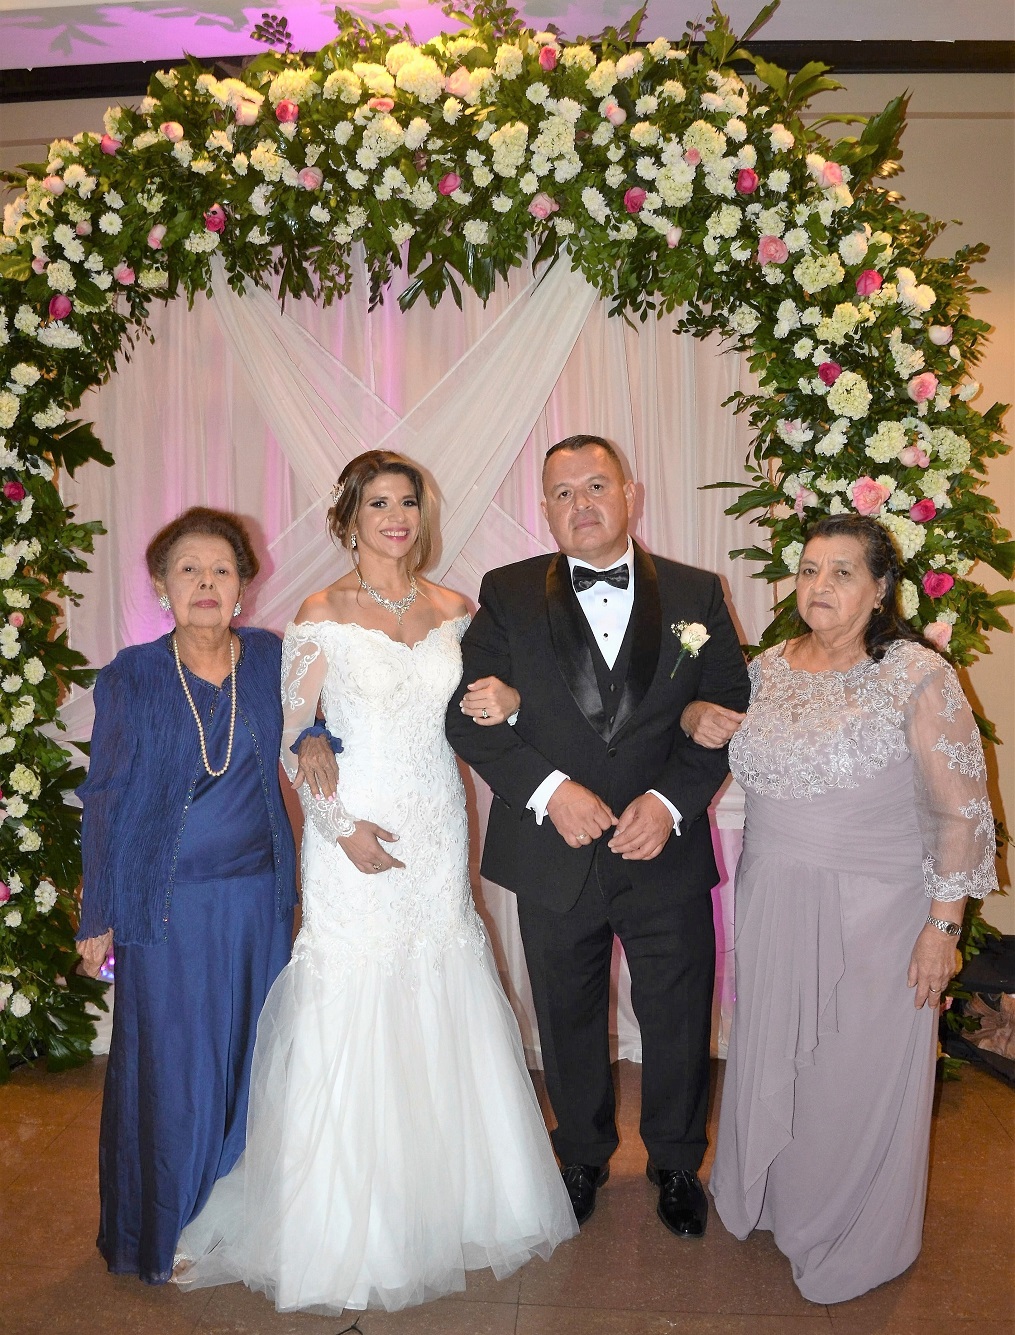 La boda de Geonany Leiva y Fernandina Zerón…¡de inspiración clásica!